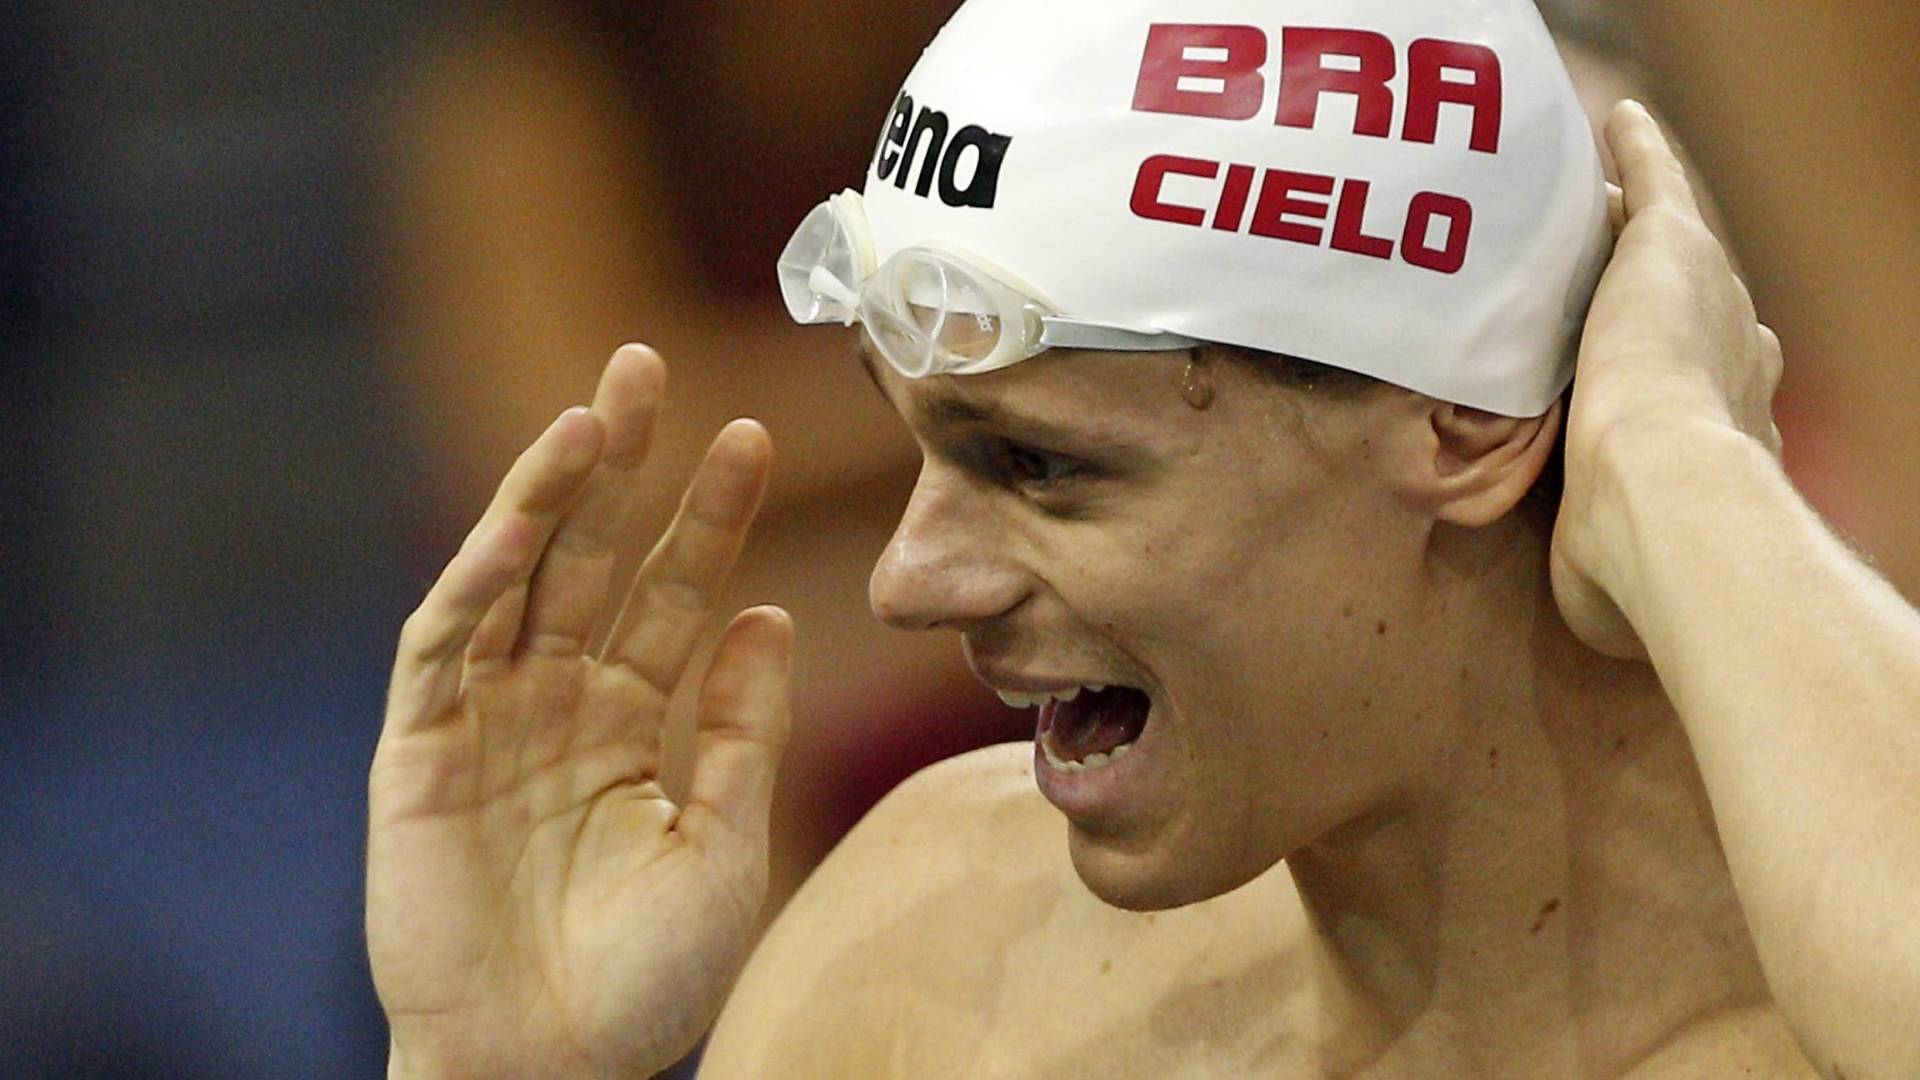 Cesar Cielo treina para o Mundial de natação de Xangai após se livrar de punição por doping na CAS (22/07/2011)